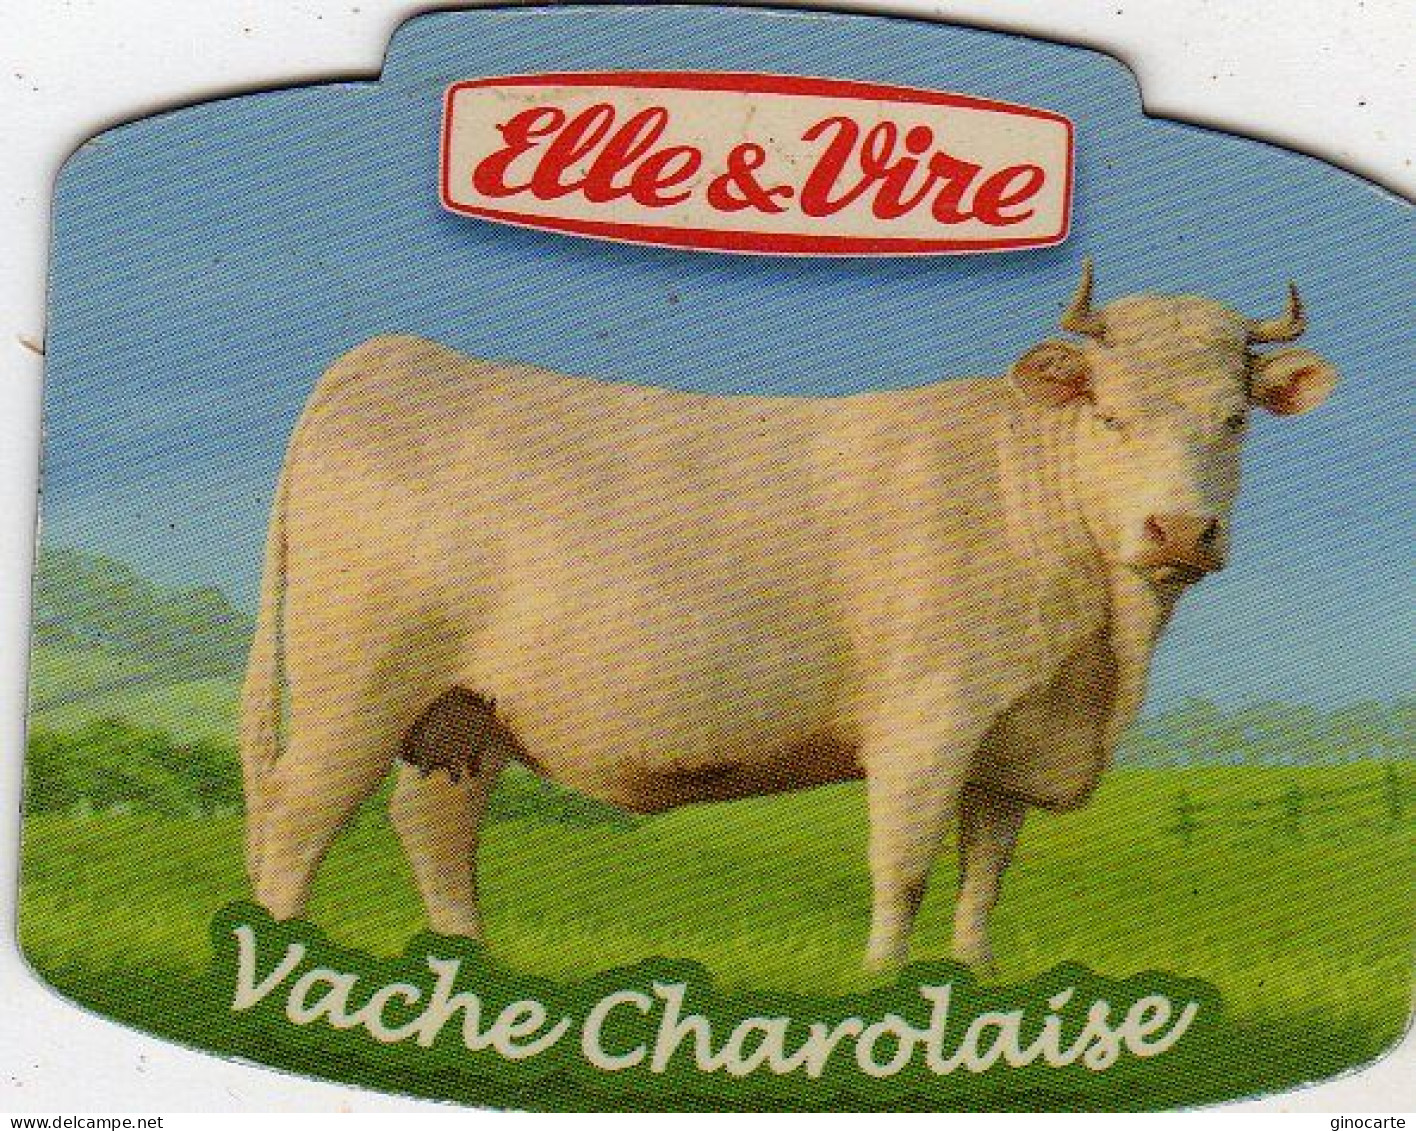 Magnets Magnet Elle Et Vire Vache Charolaise - Tourism